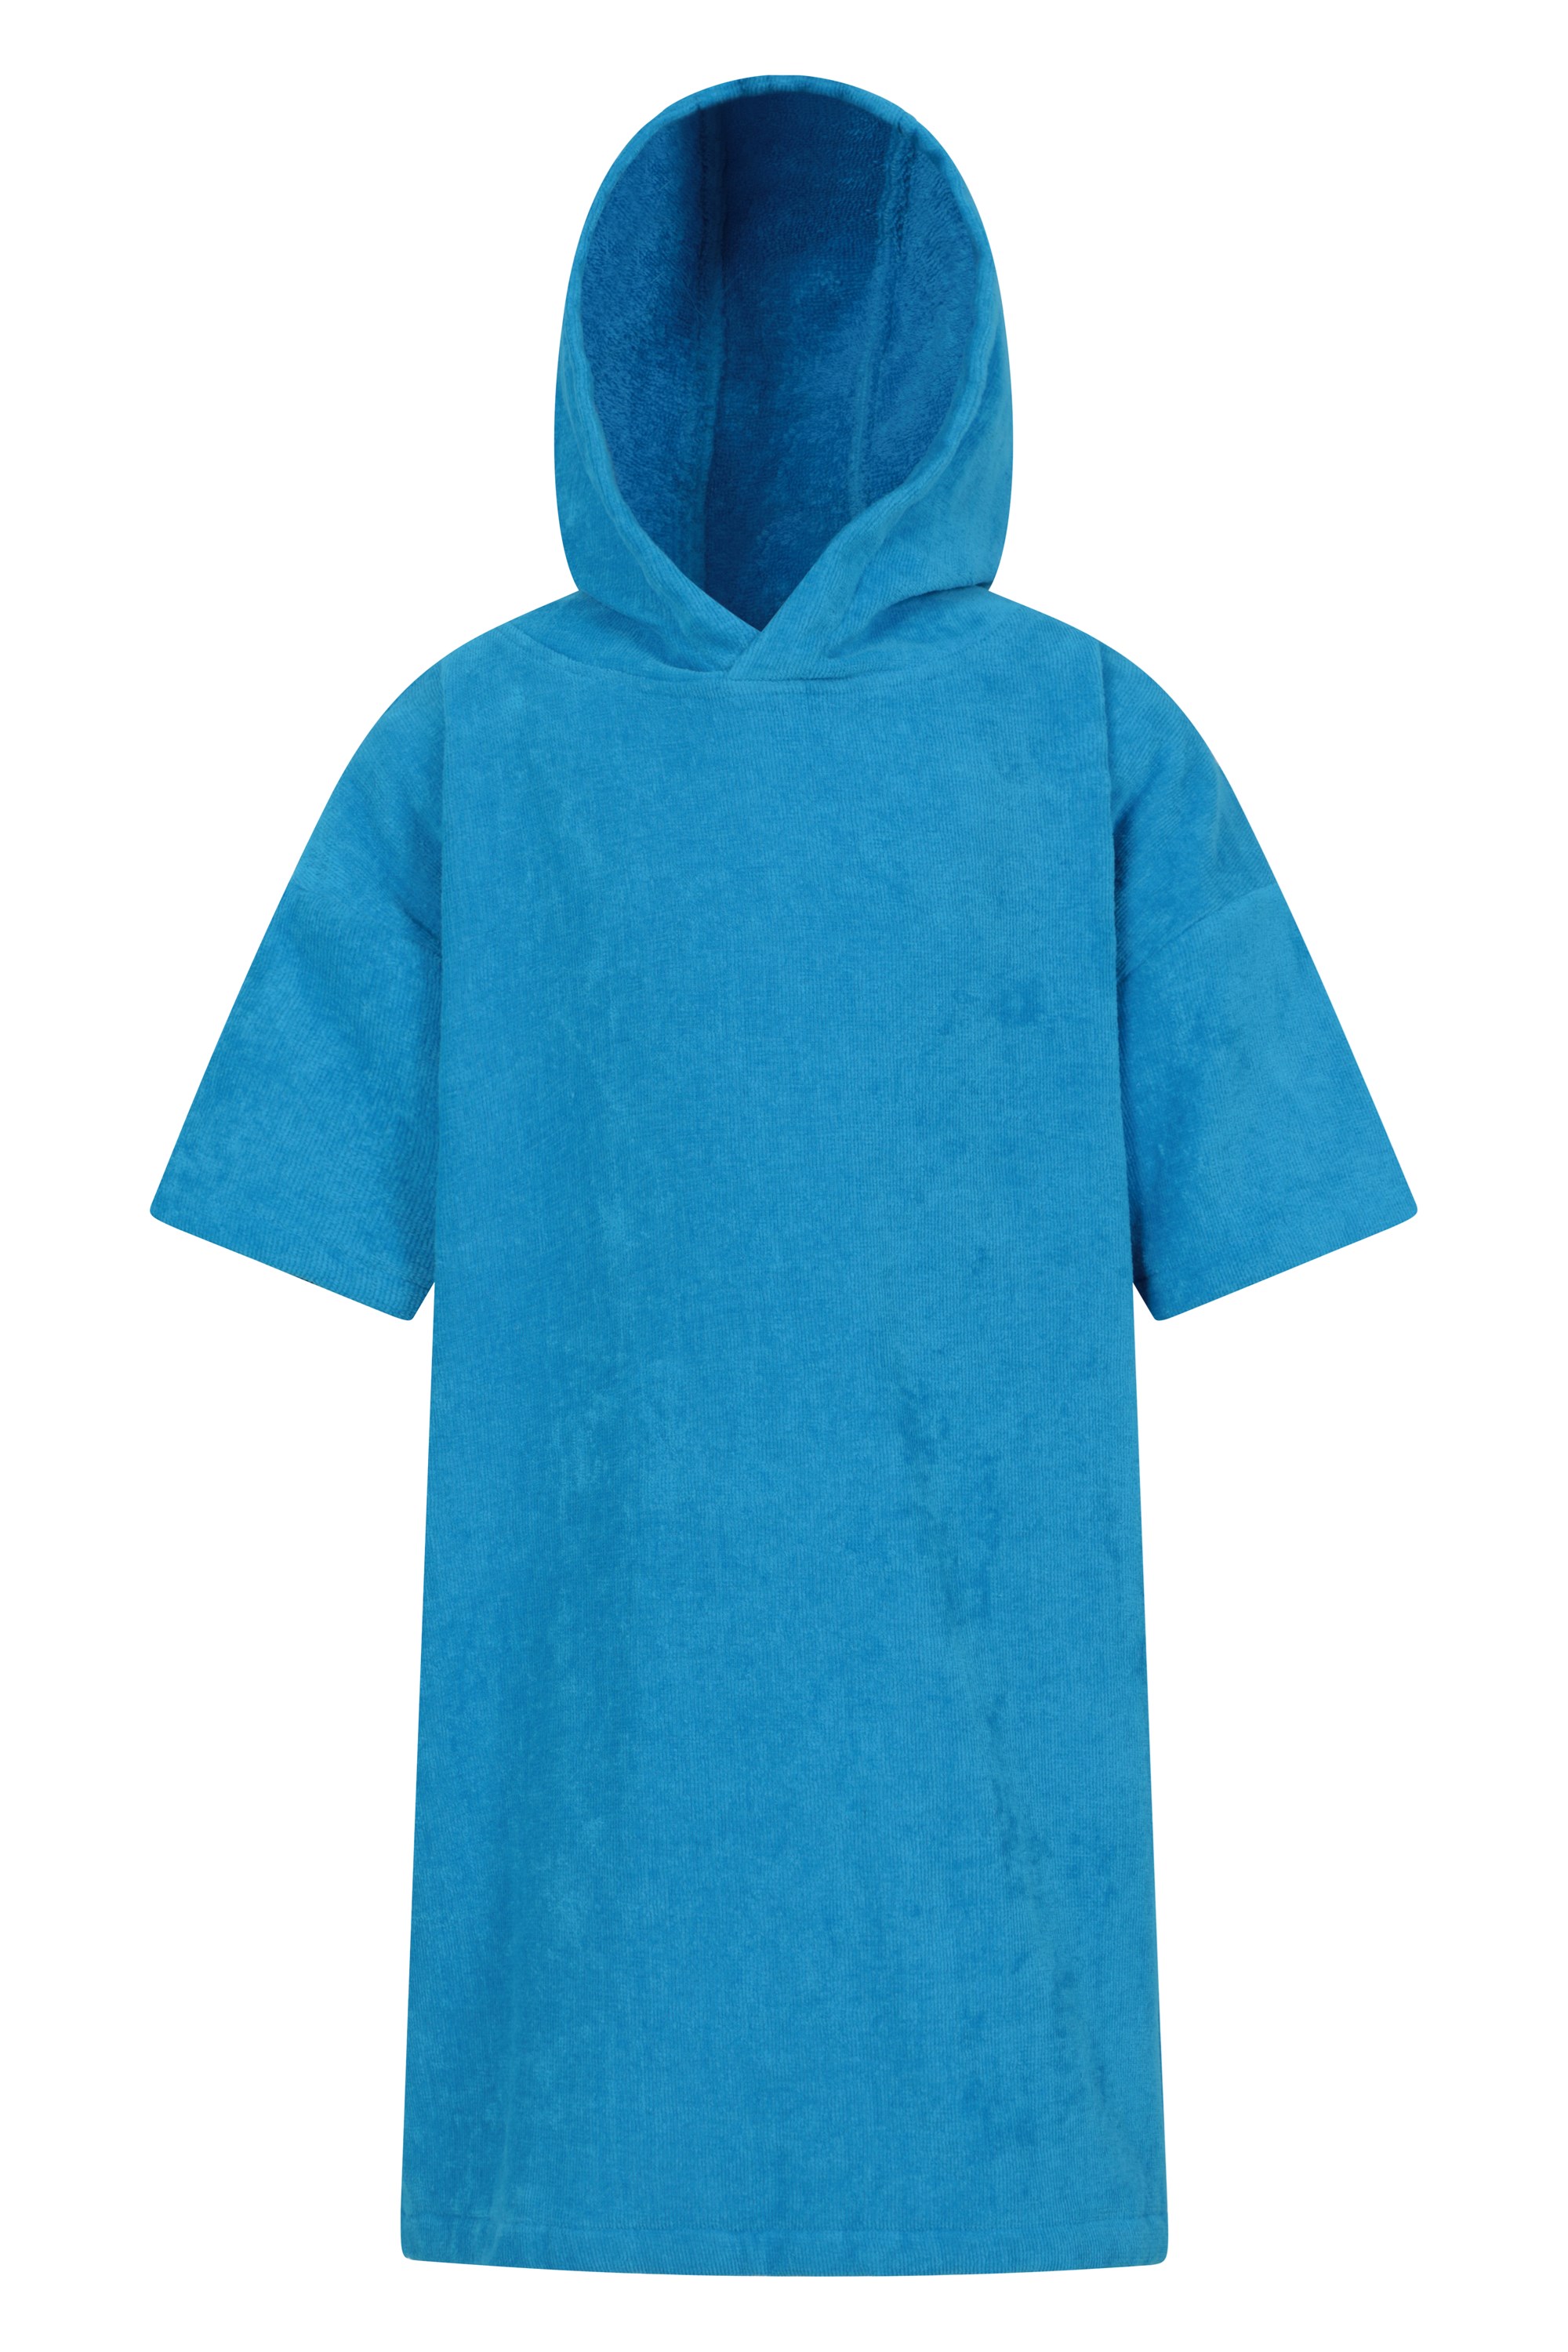 driftwood dziecięcy ręcznik do przebierania się - blue